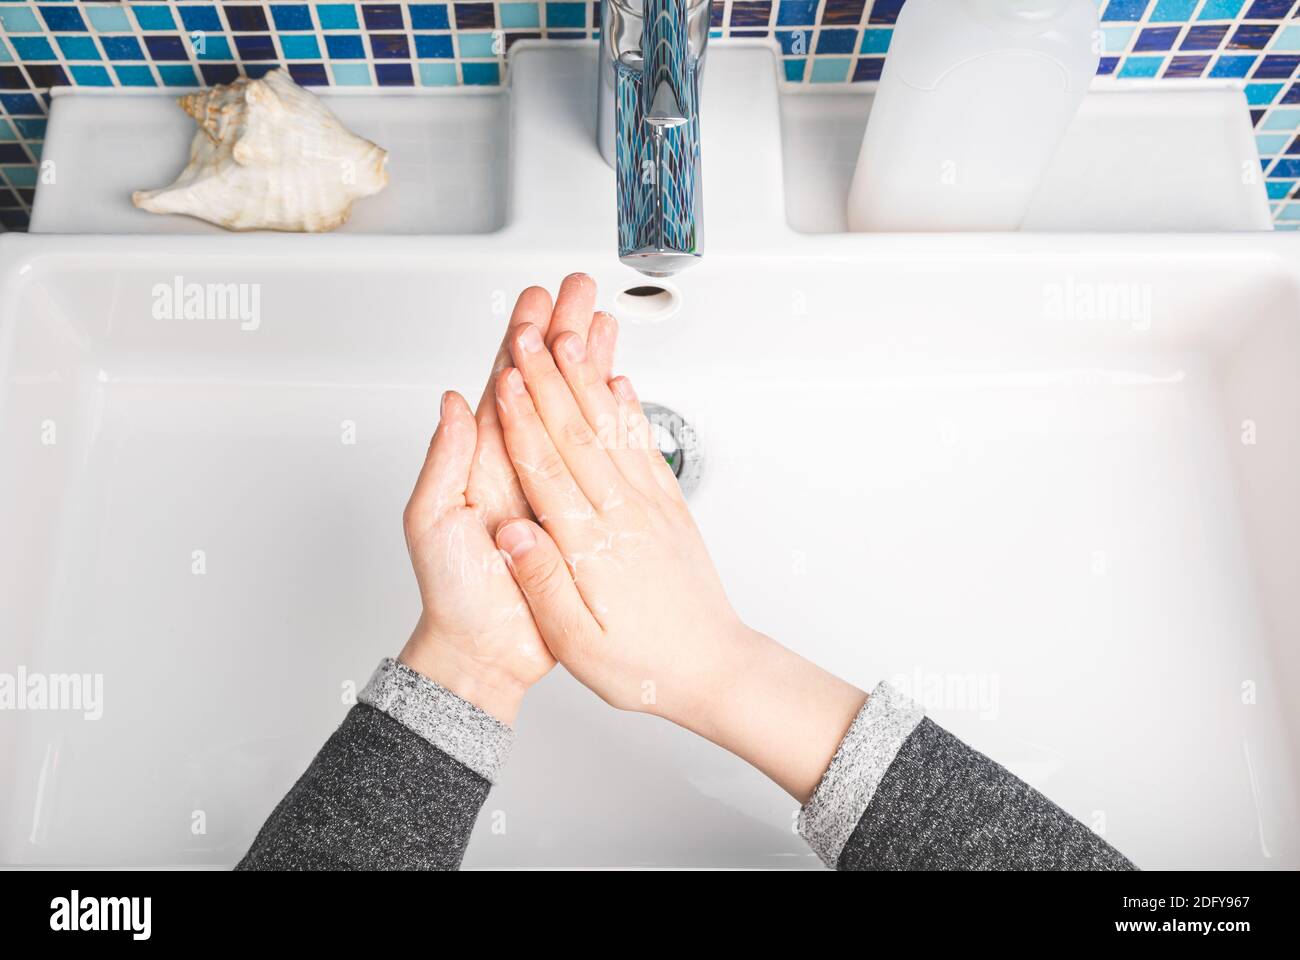 Bambino diligentemente mani che si sporgono eseguendo il lavaggio a mano - misura di protezione di base Contro la diffusione della malattia di Coronavirus COVID-19 Foto Stock